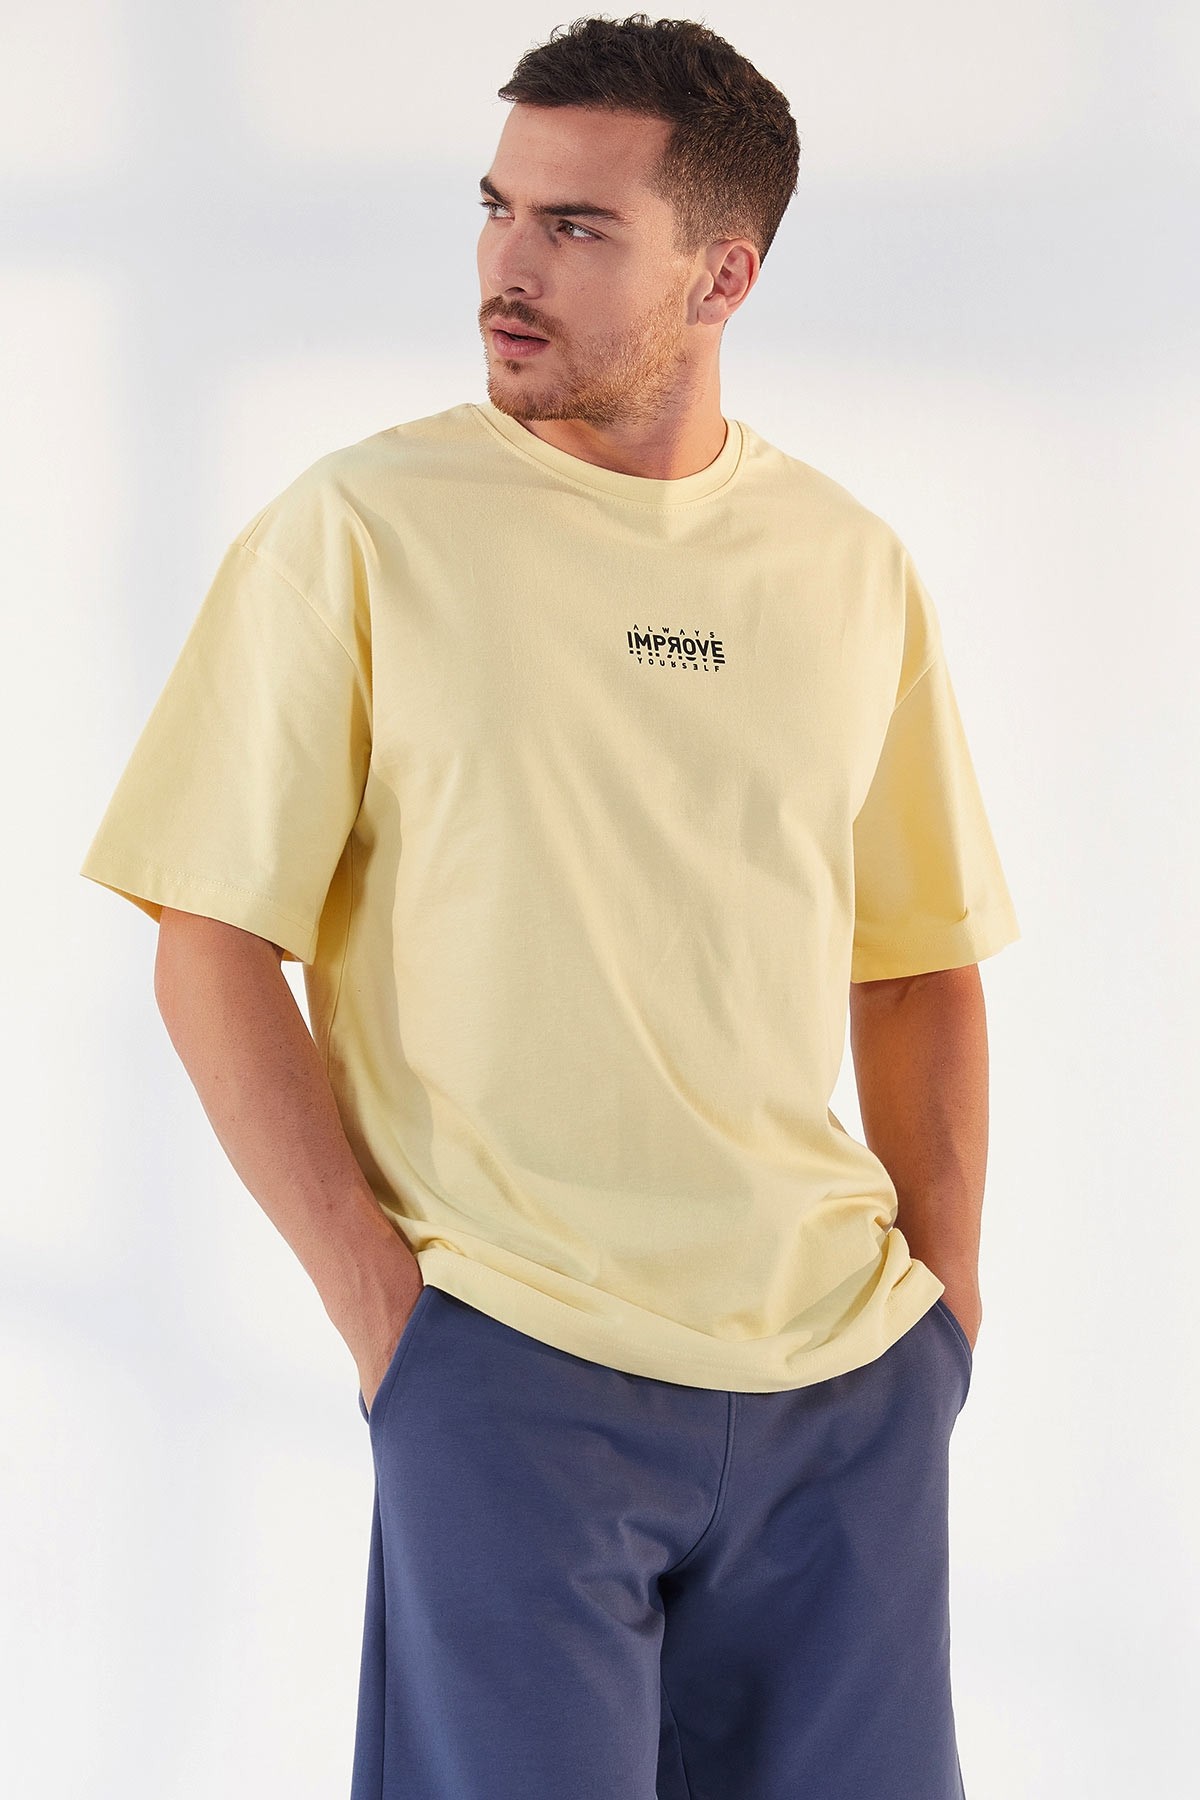 TommyLife - Sarı Küçük Yazı Baskılı O Yaka Erkek Oversize T-Shirt - 87985